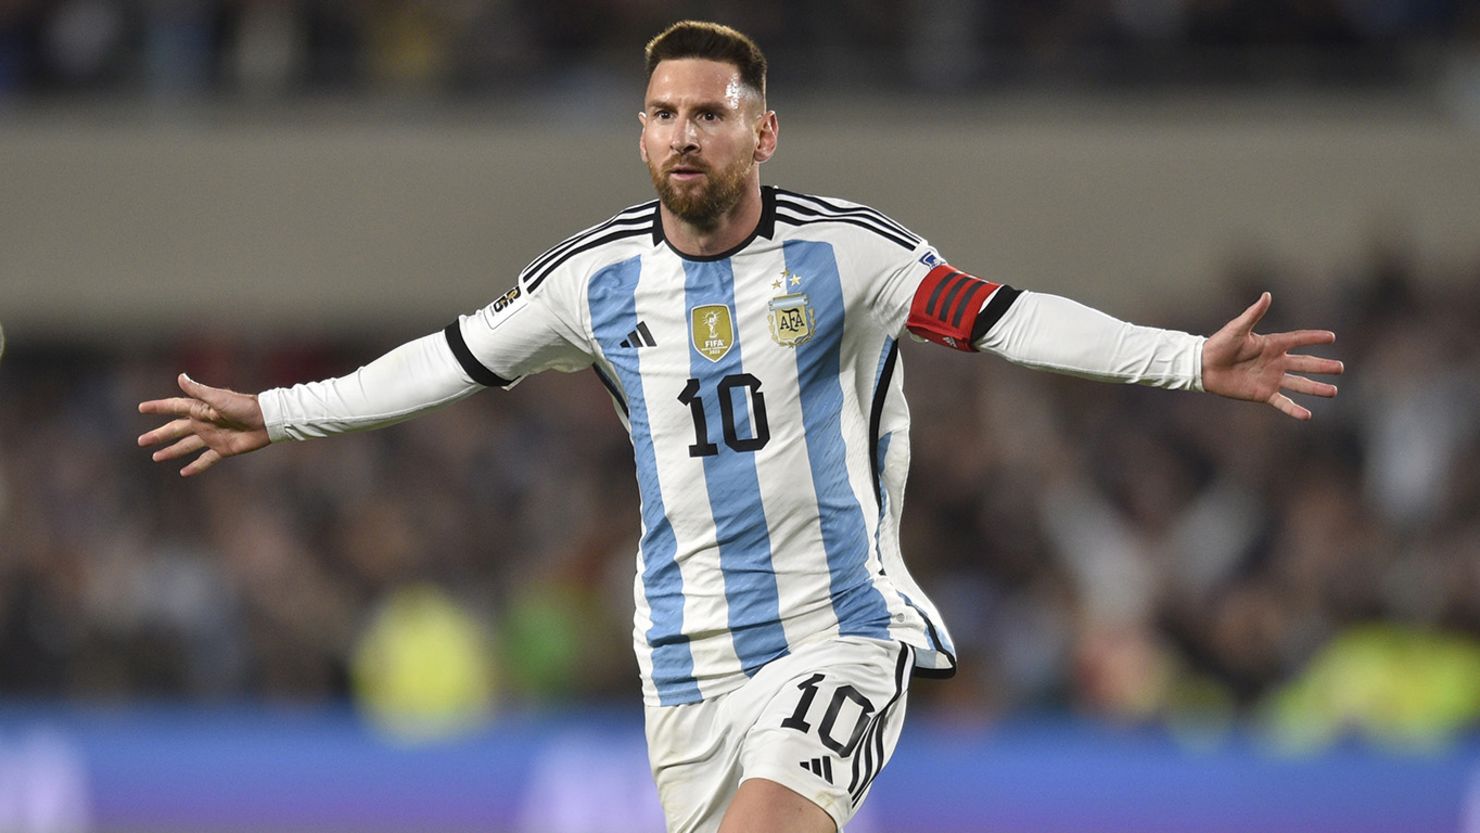 Messi mặc áo số mấy